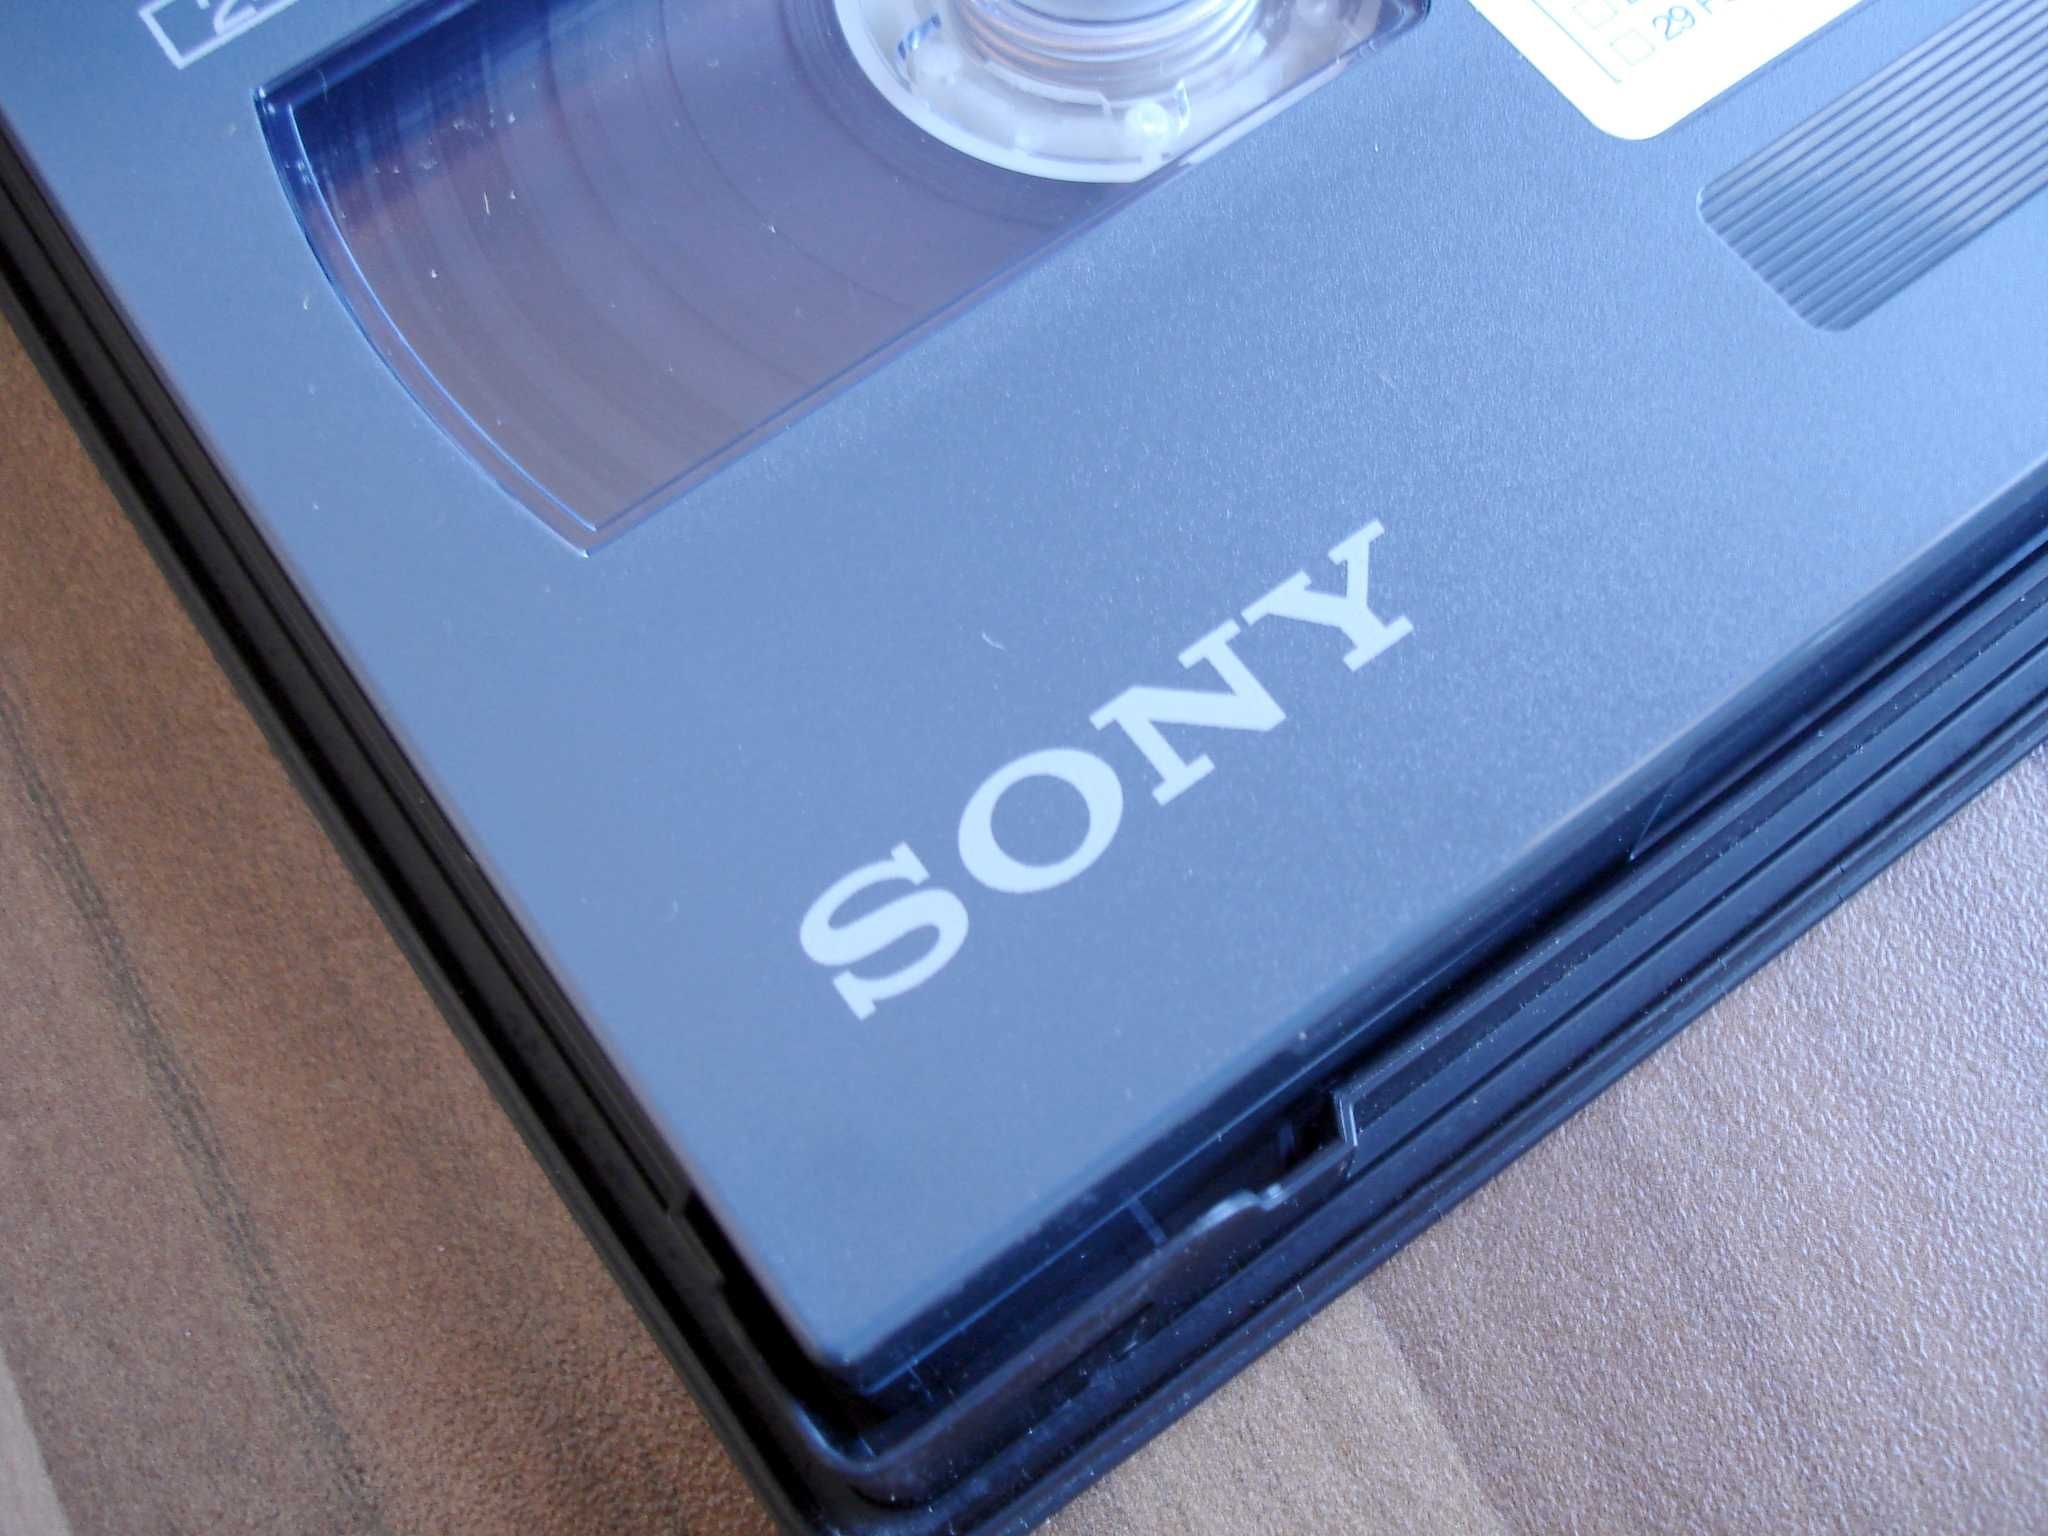 Sony HDCAM - Професионални видеокасети